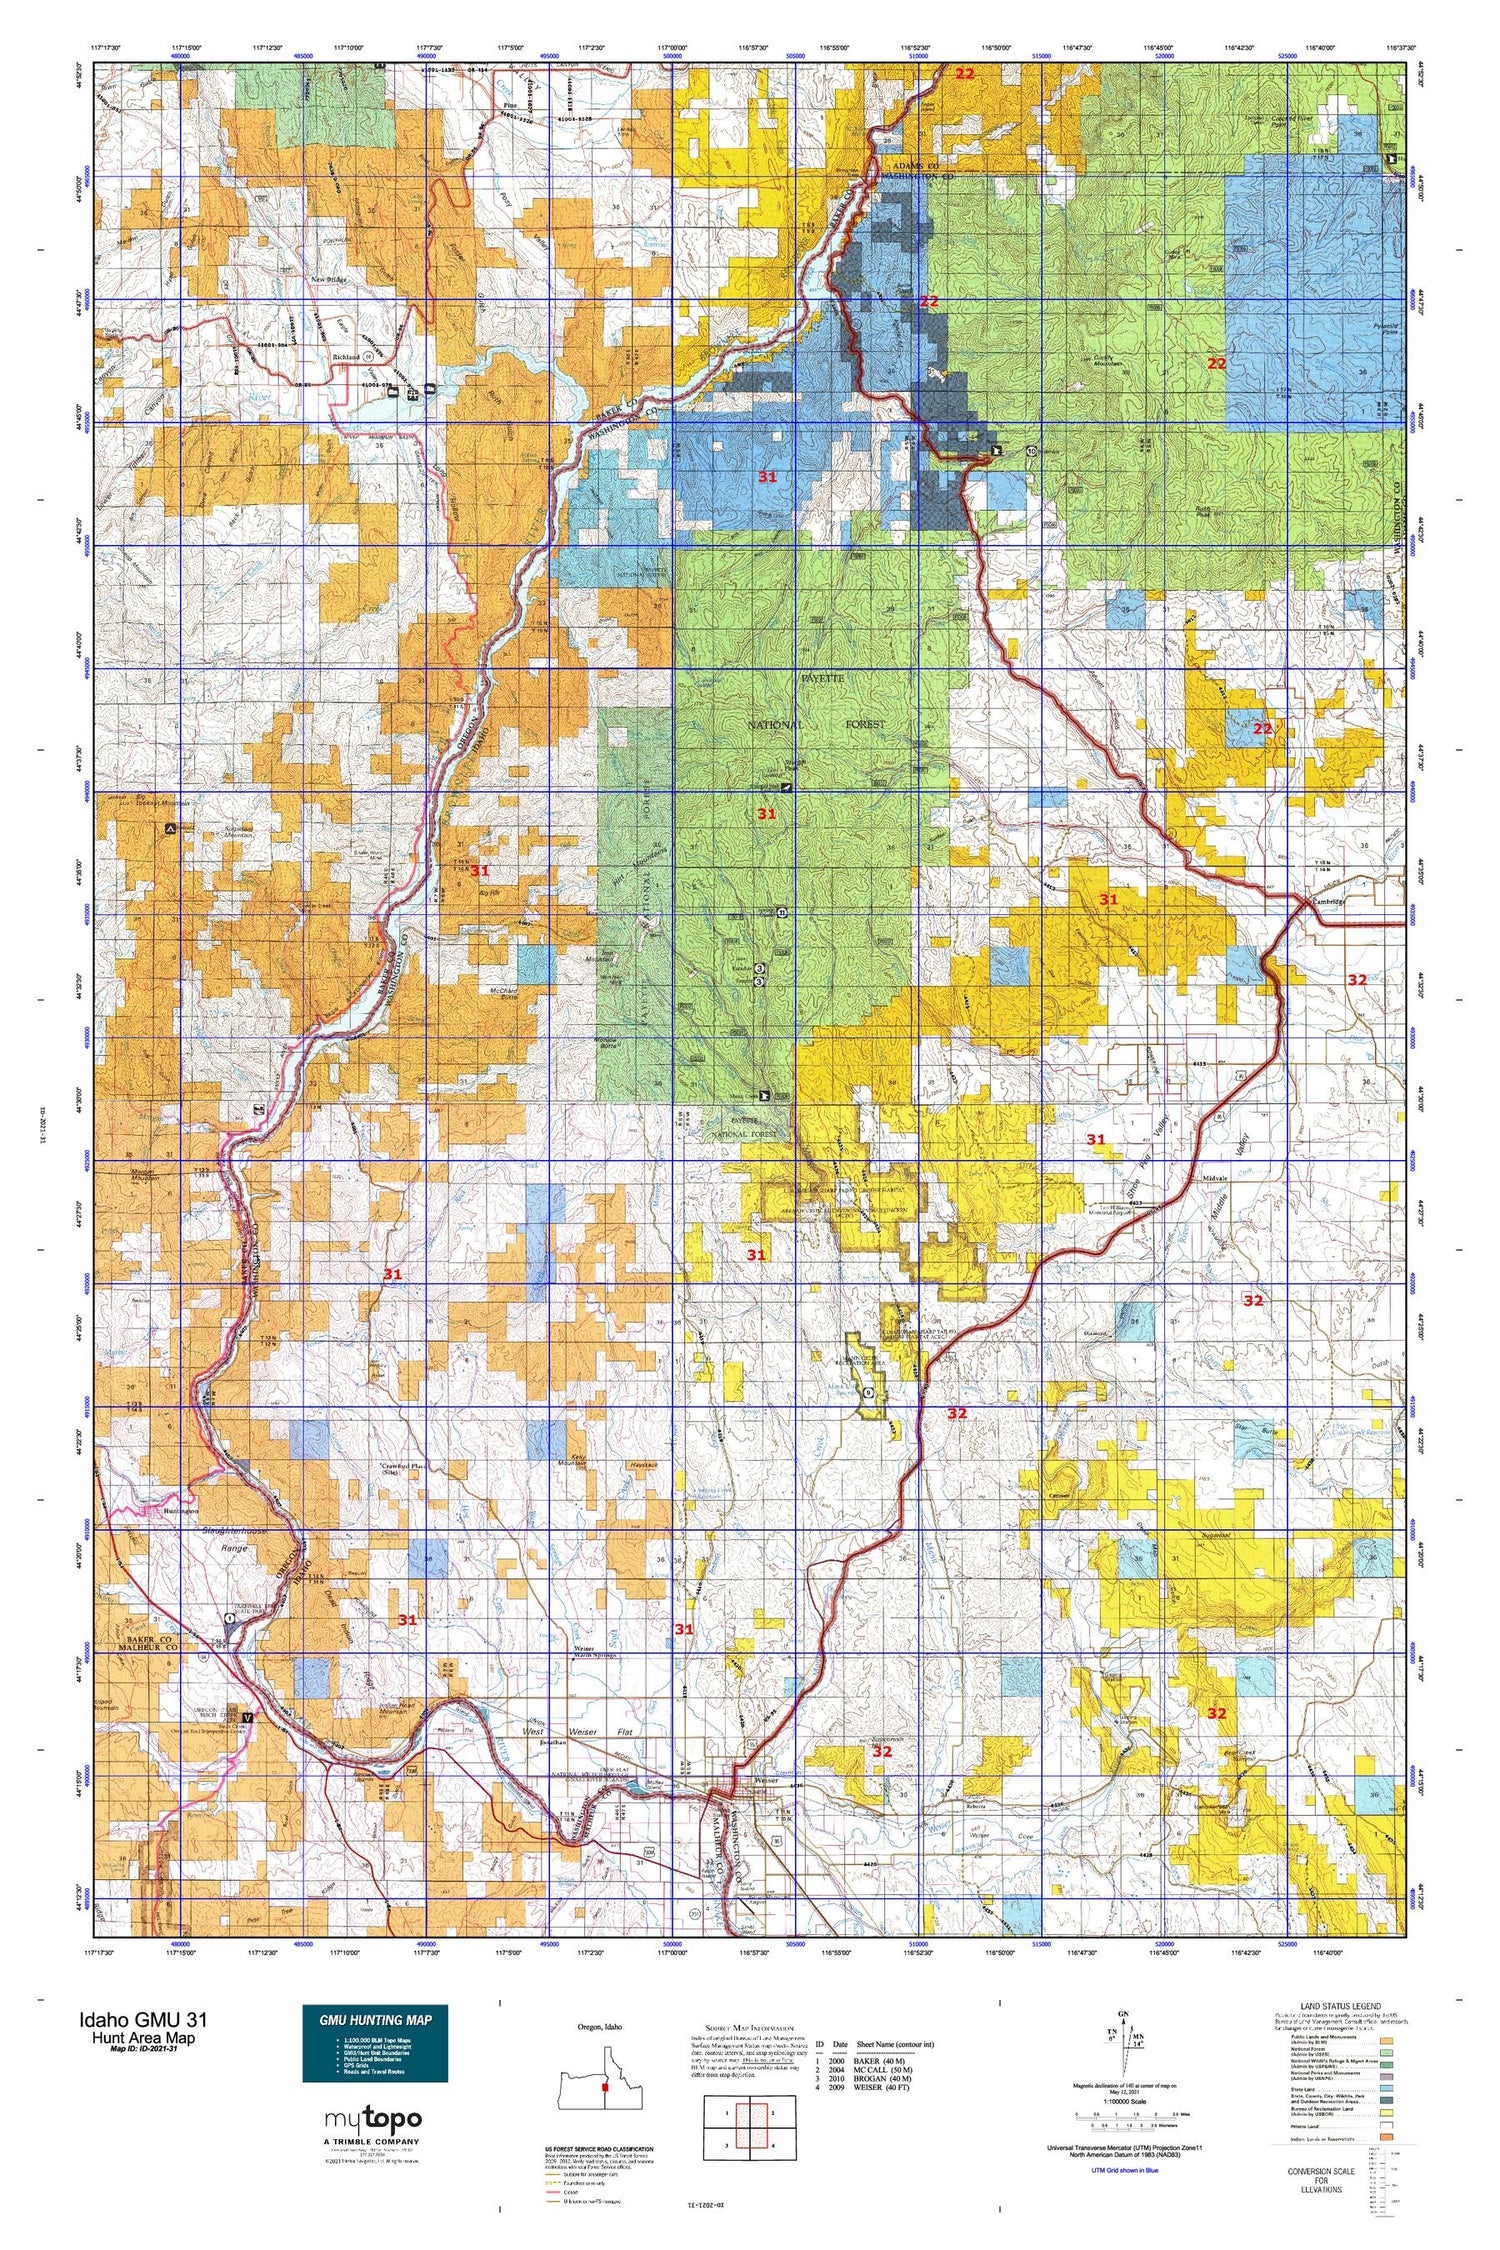 Idaho GMU 31 Map Image